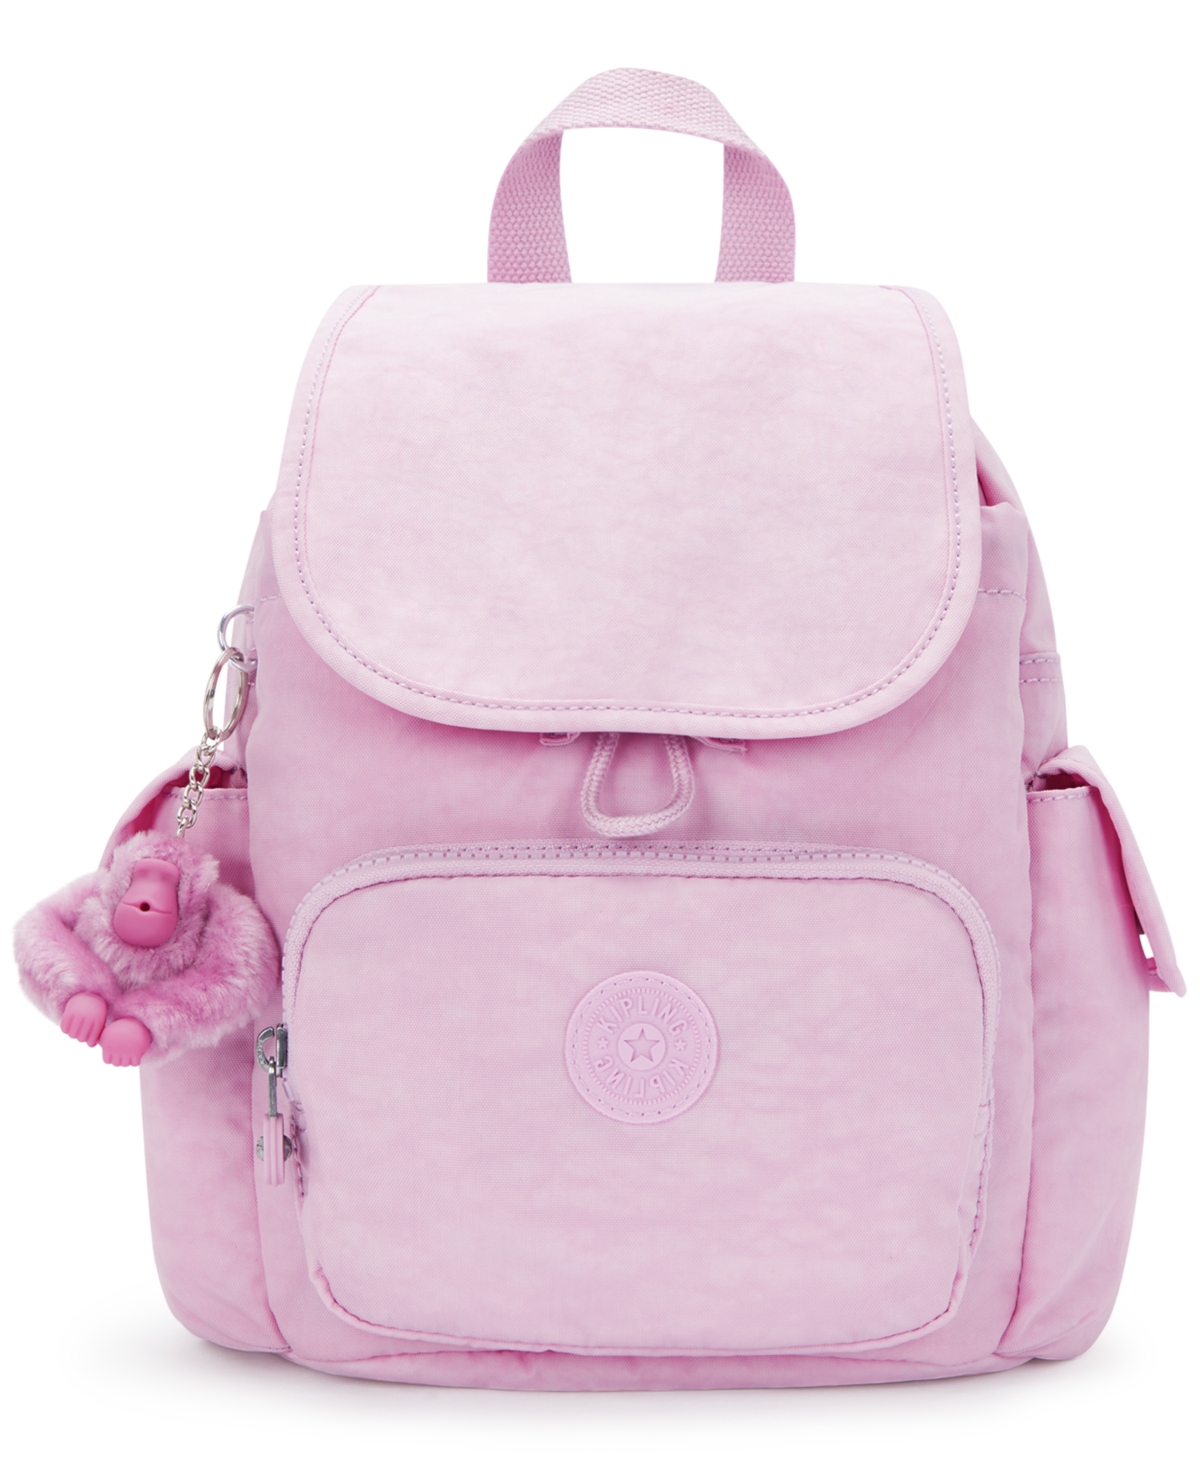 Kipling City Pack Mini Backpack In Blooming Pink